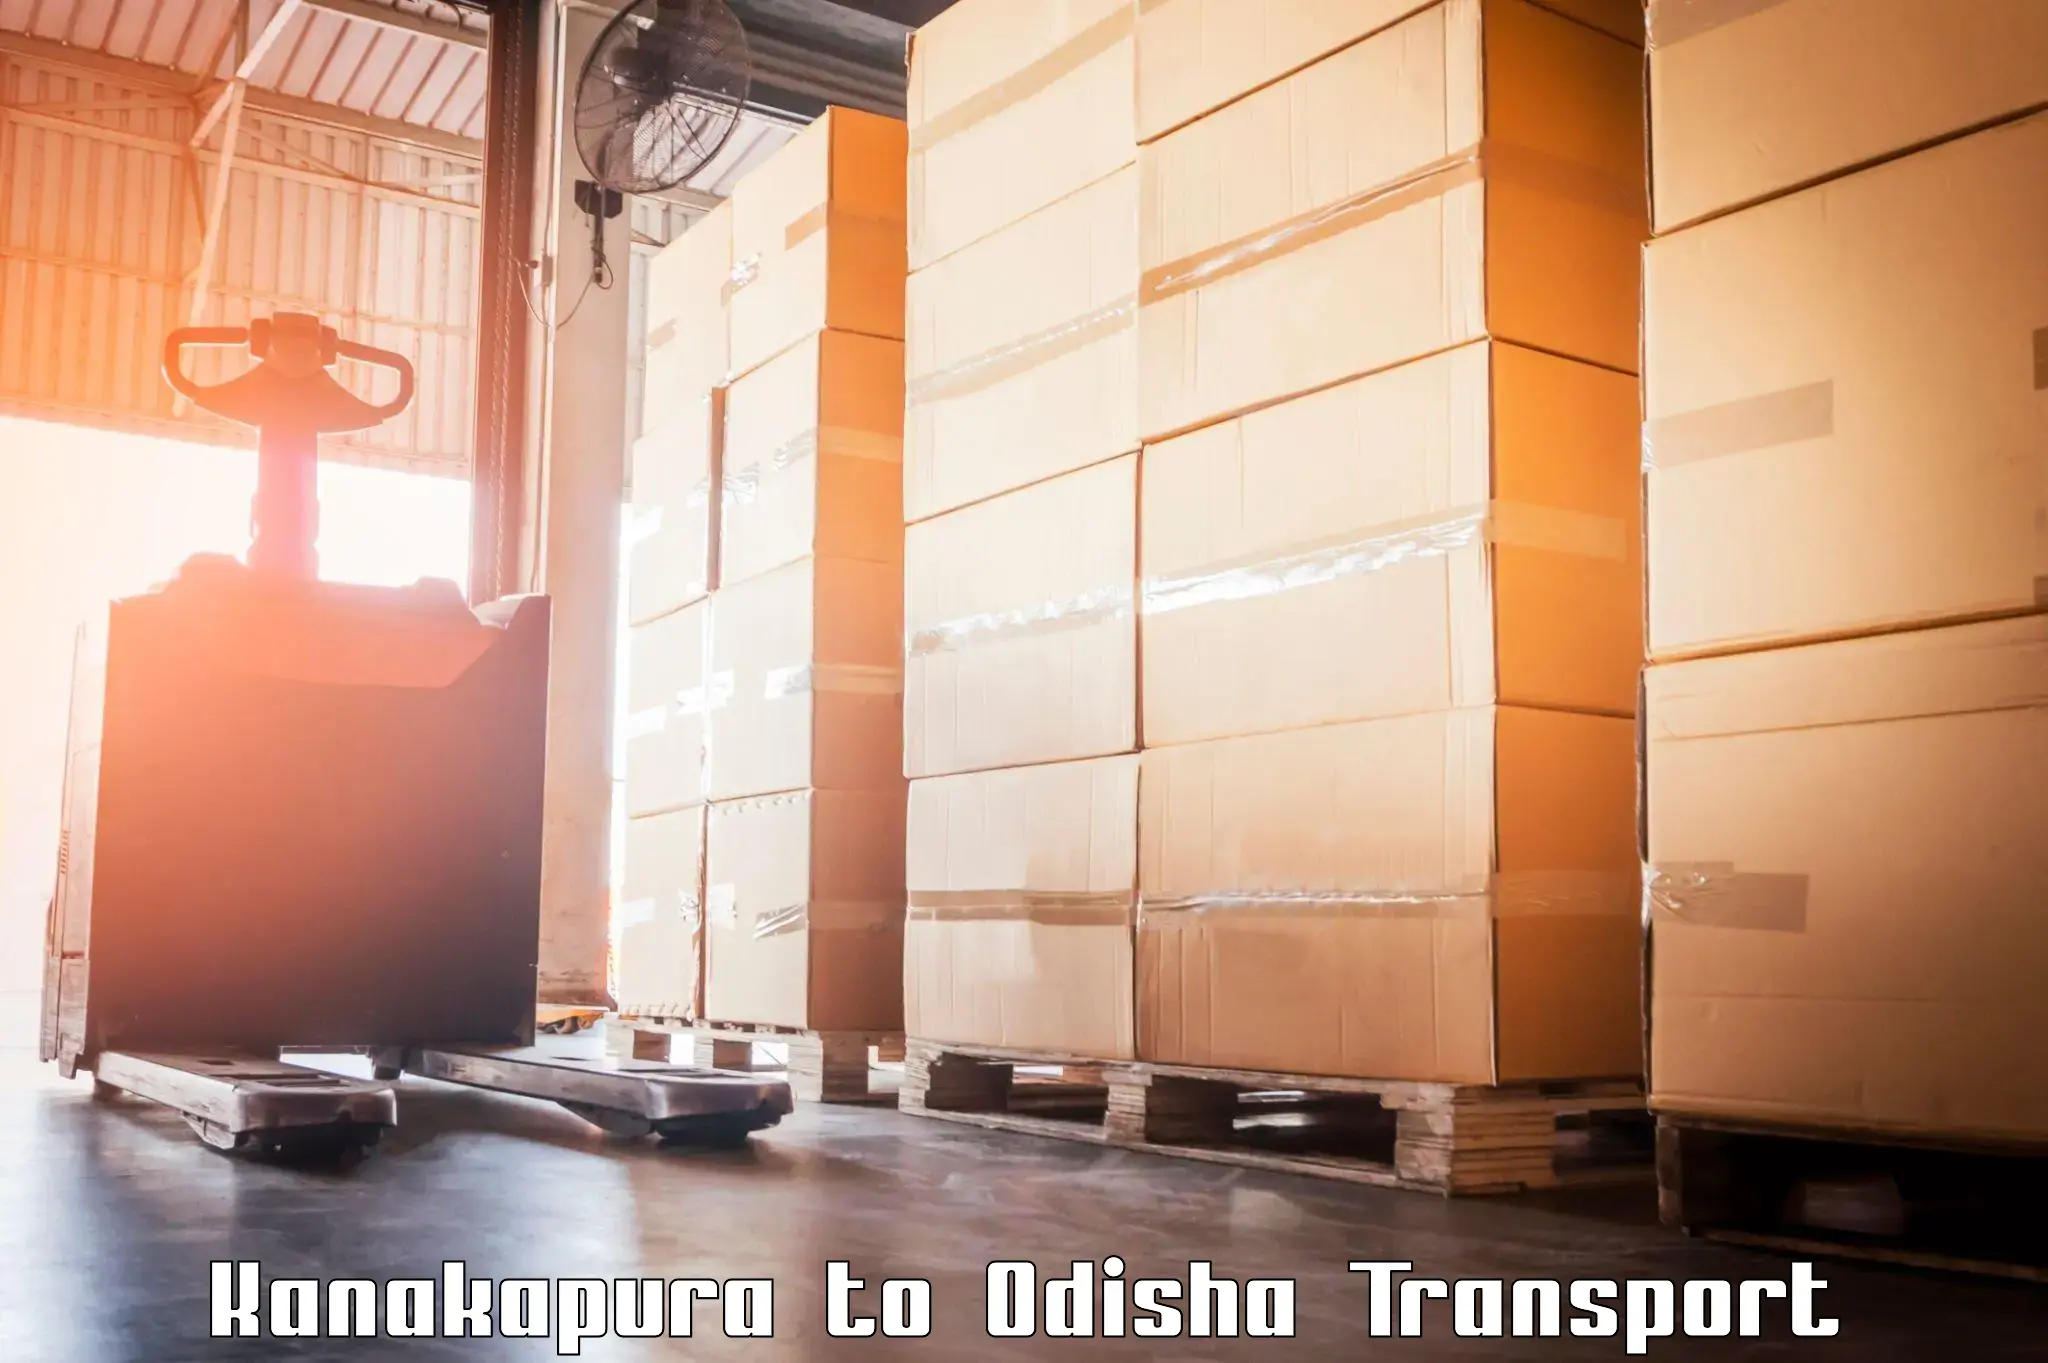 Goods transport services Kanakapura to Telkoi